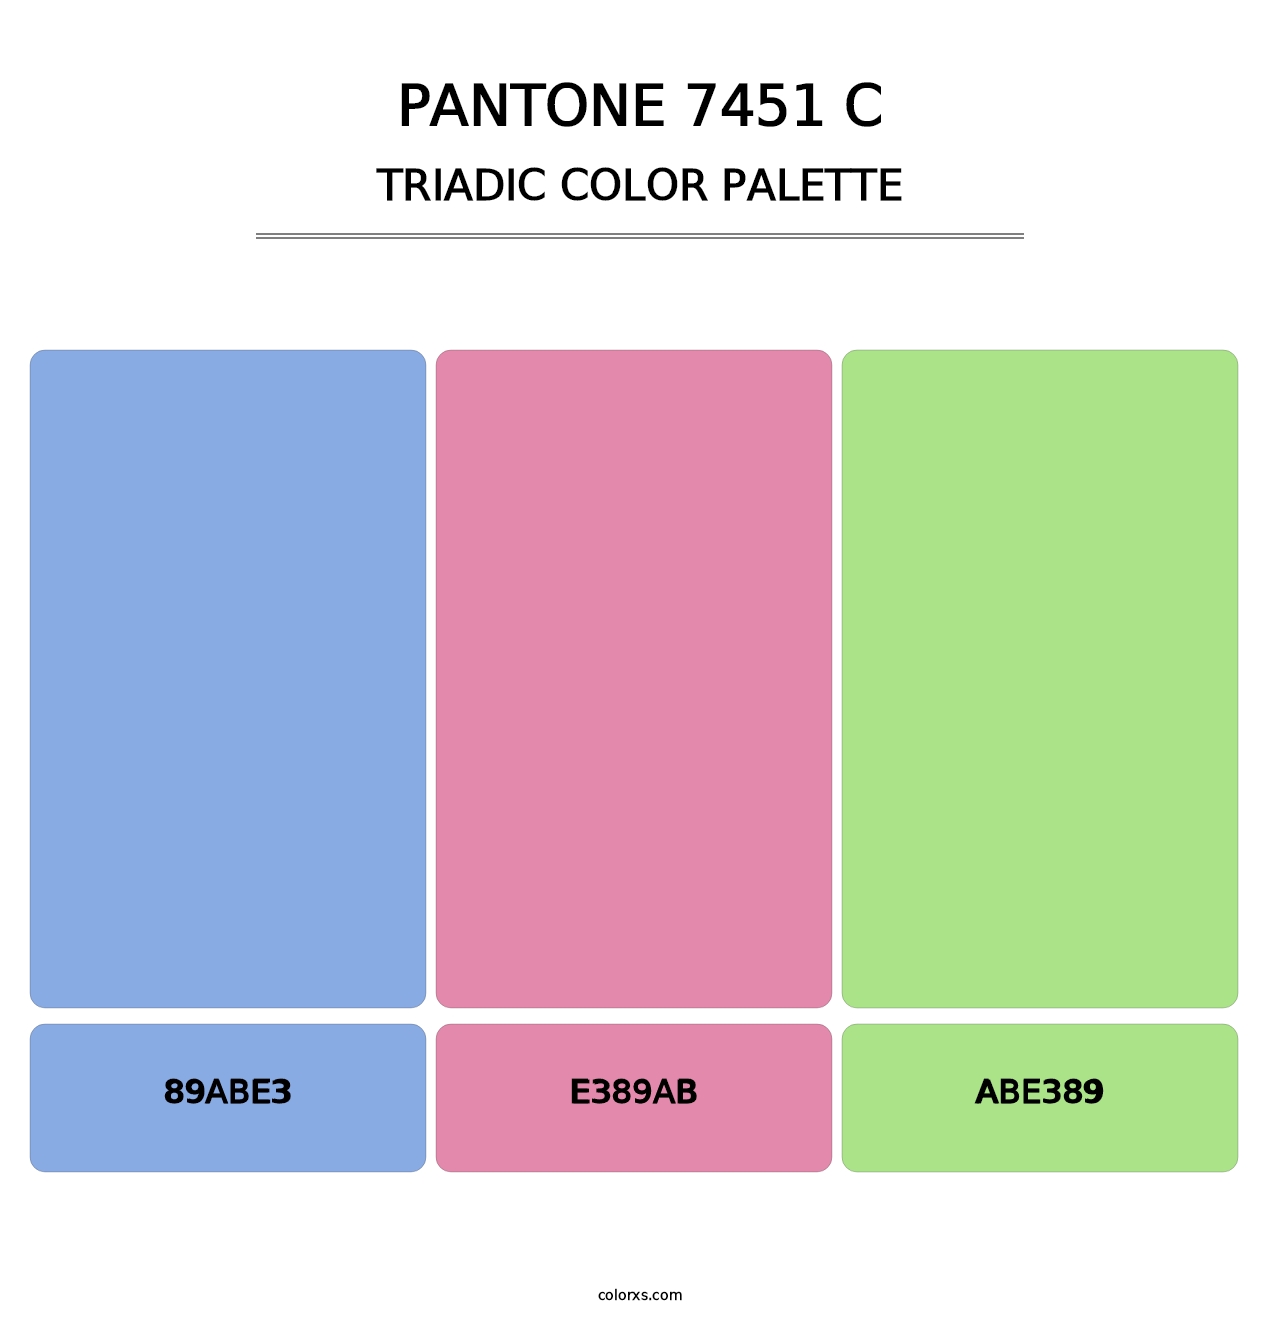 PANTONE 7451 C - Triadic Color Palette